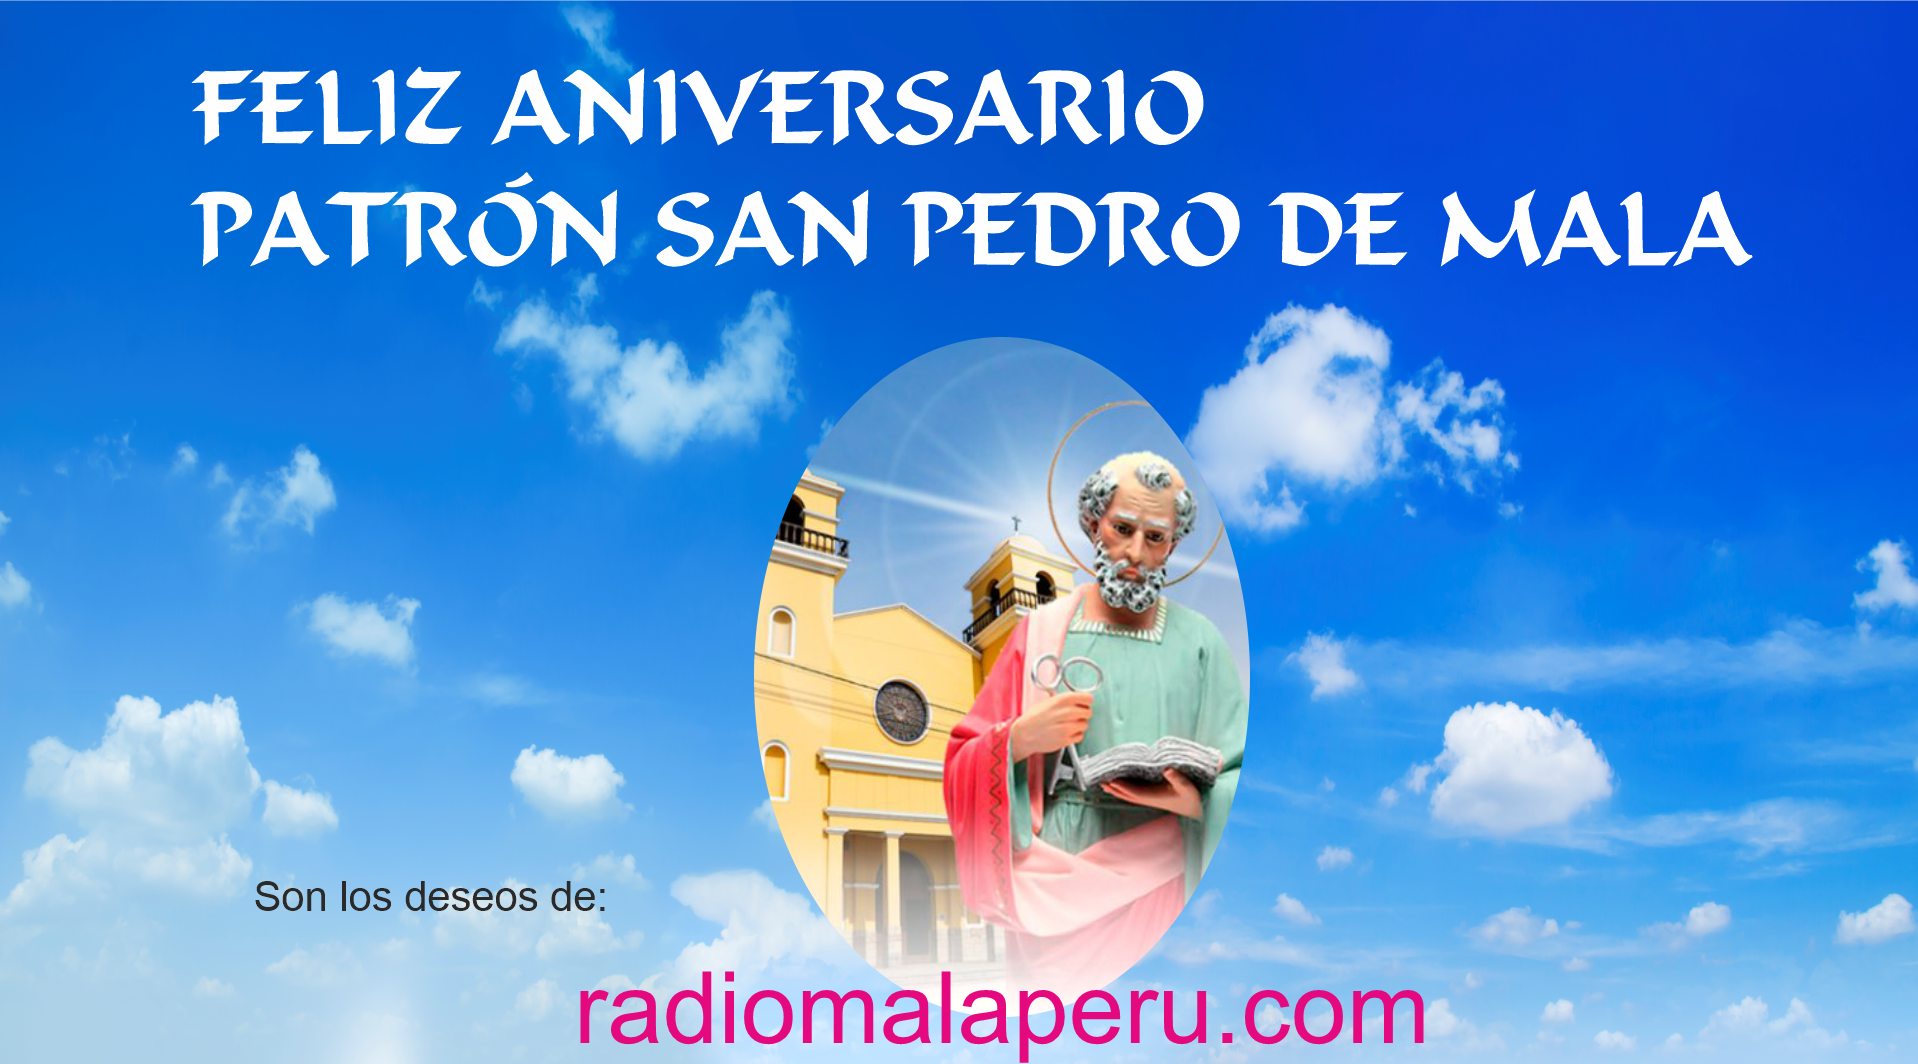 Aniversario del Santo patron San Pedro de Mala